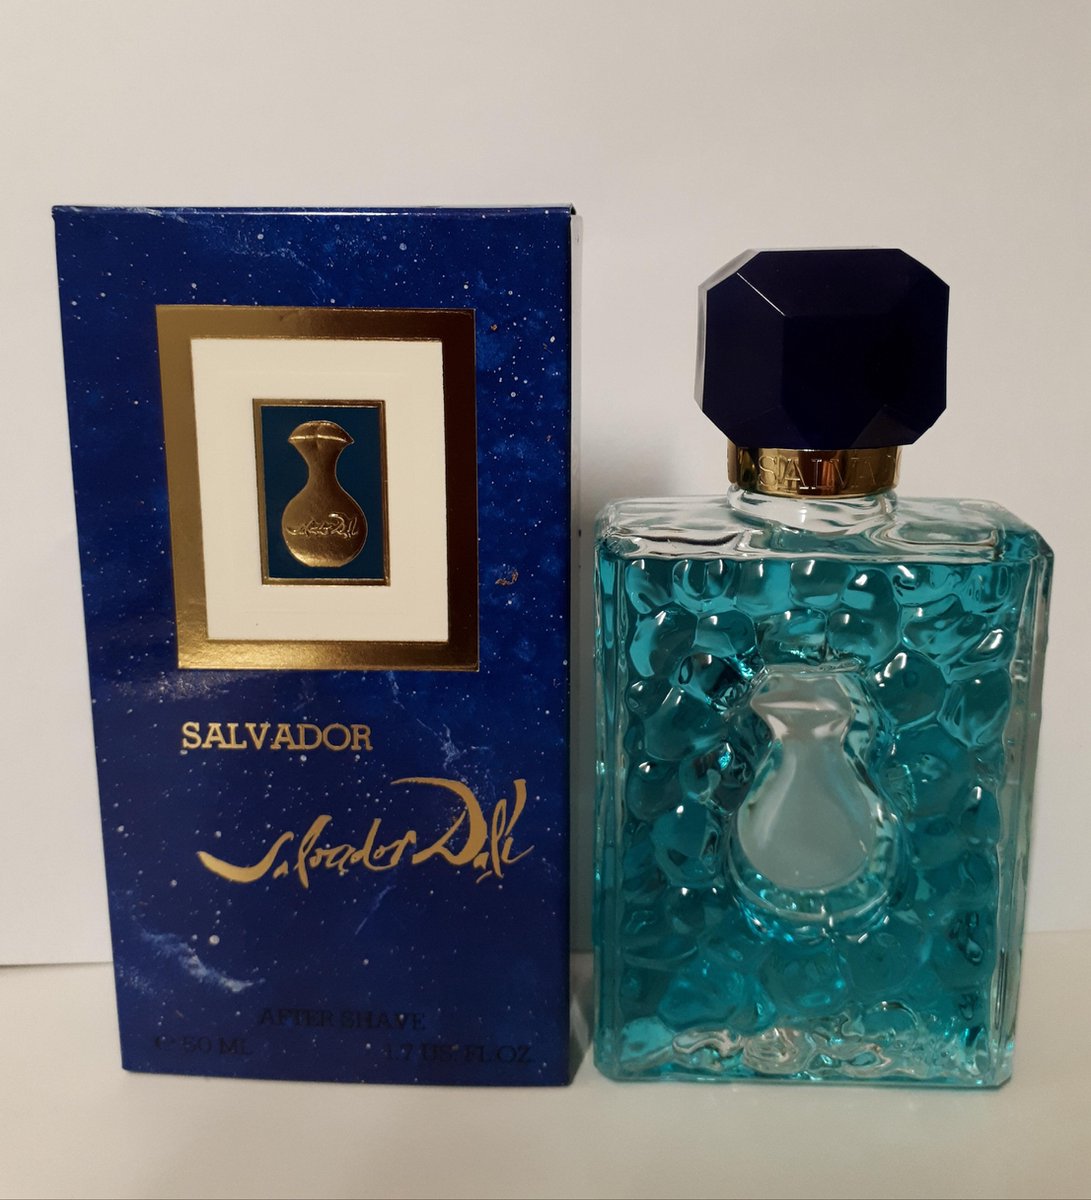 SALVADOR, Salvador Dali, After shave, flacon, 50 ml - Vintage (1992)